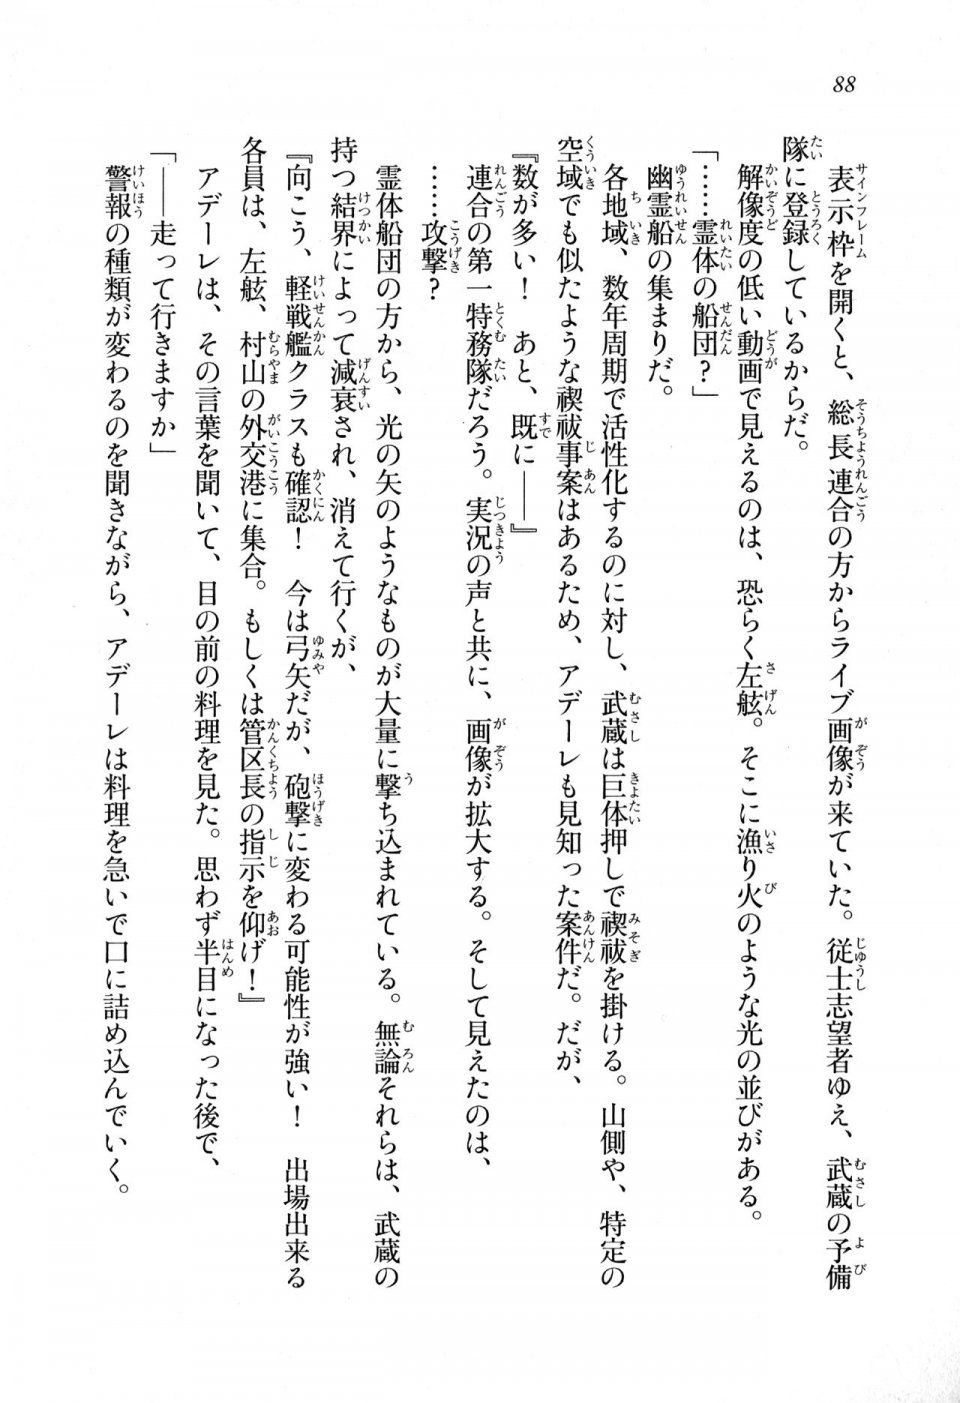 Kyoukai Senjou no Horizon LN Sidestory Vol 1 - Photo #86